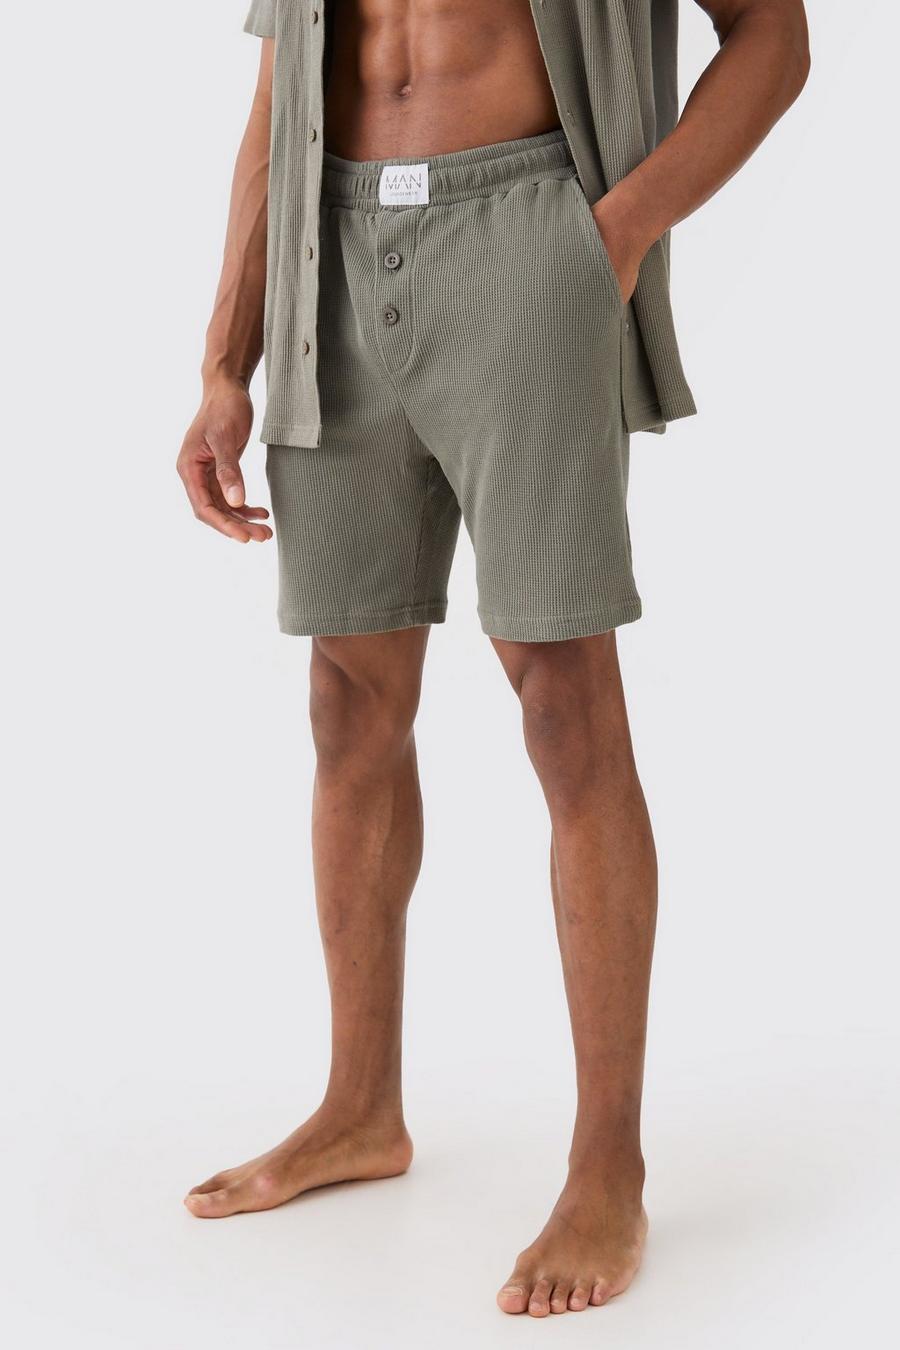 Pantalones cortos para estar en casa de tela gofre en color caqui, Khaki image number 1